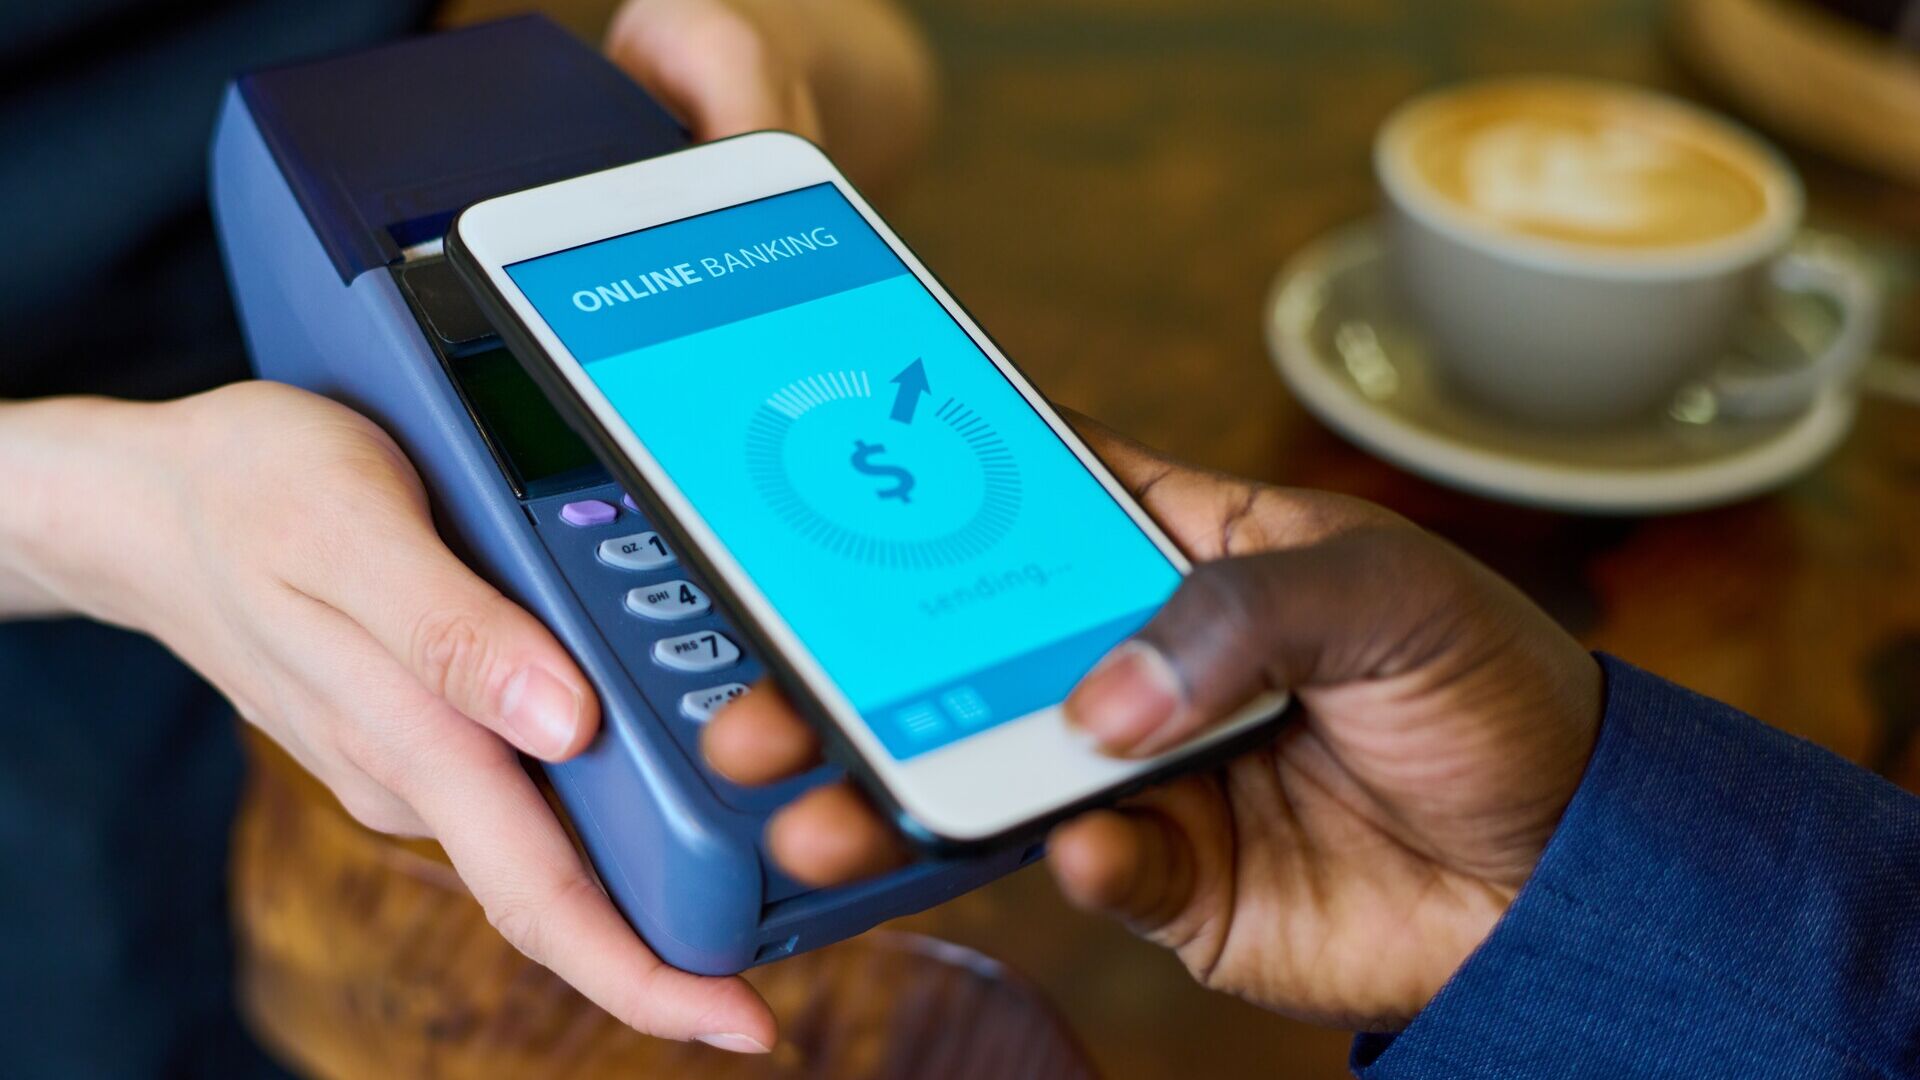 मोबाइल भुगतान: मोबाइल भुगतान के लाभ सुविधा, गति और अतिरिक्त सुरक्षा सुविधाएँ हैं, जैसे फ़िंगरप्रिंट या चेहरे की पहचान